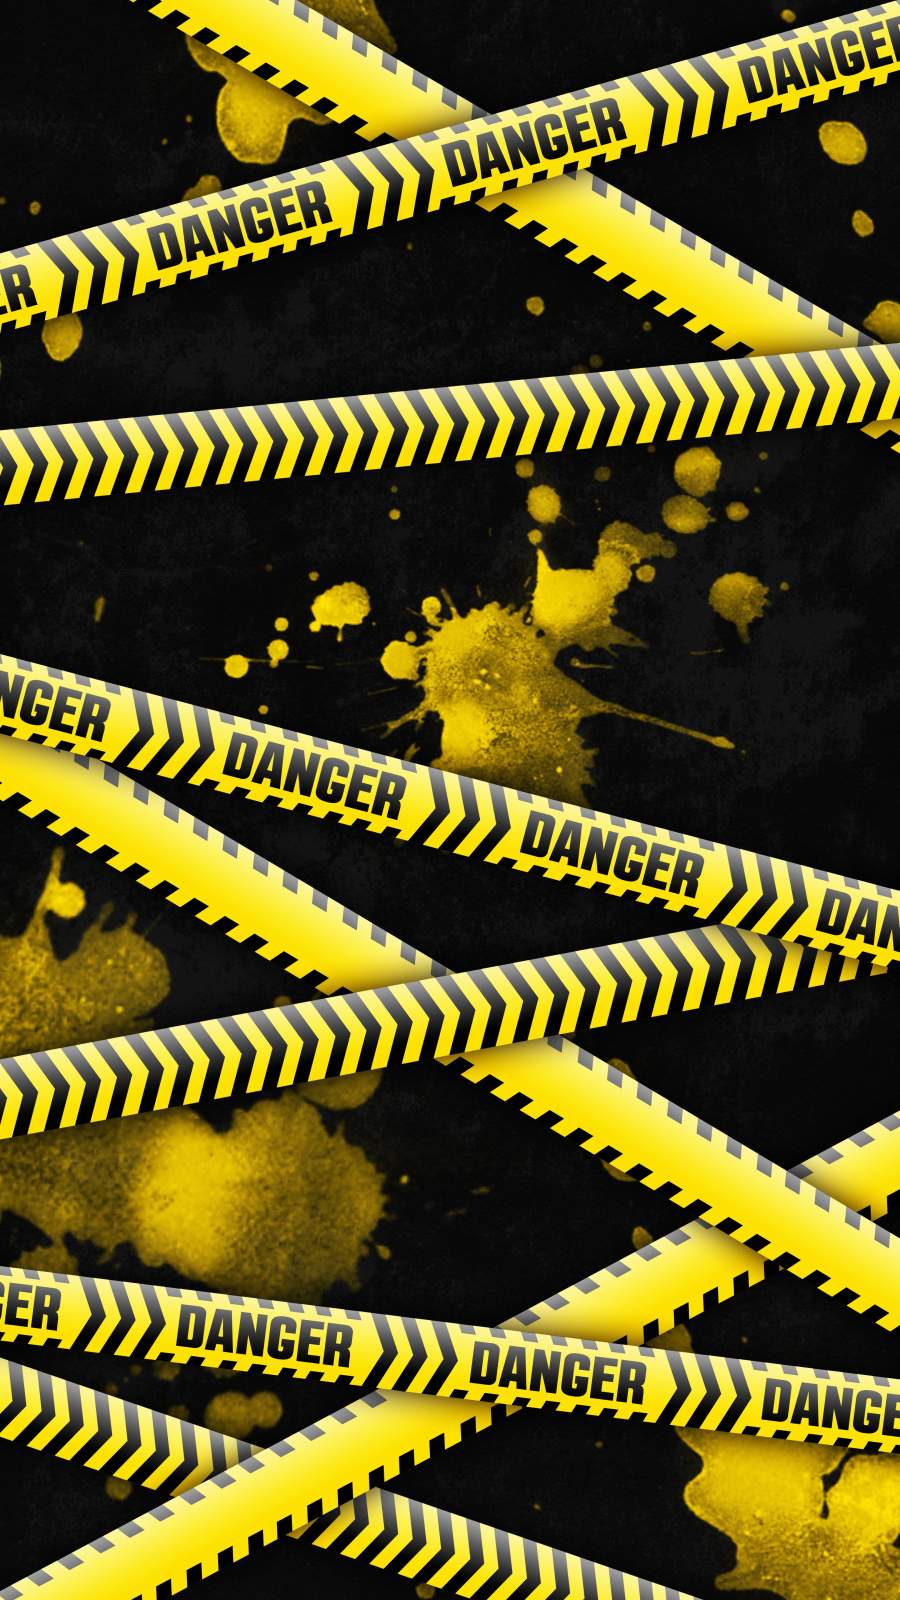 Danger Zone IPhone Wallpaper - IPhone Wallpapers : iPhone Wallpapers